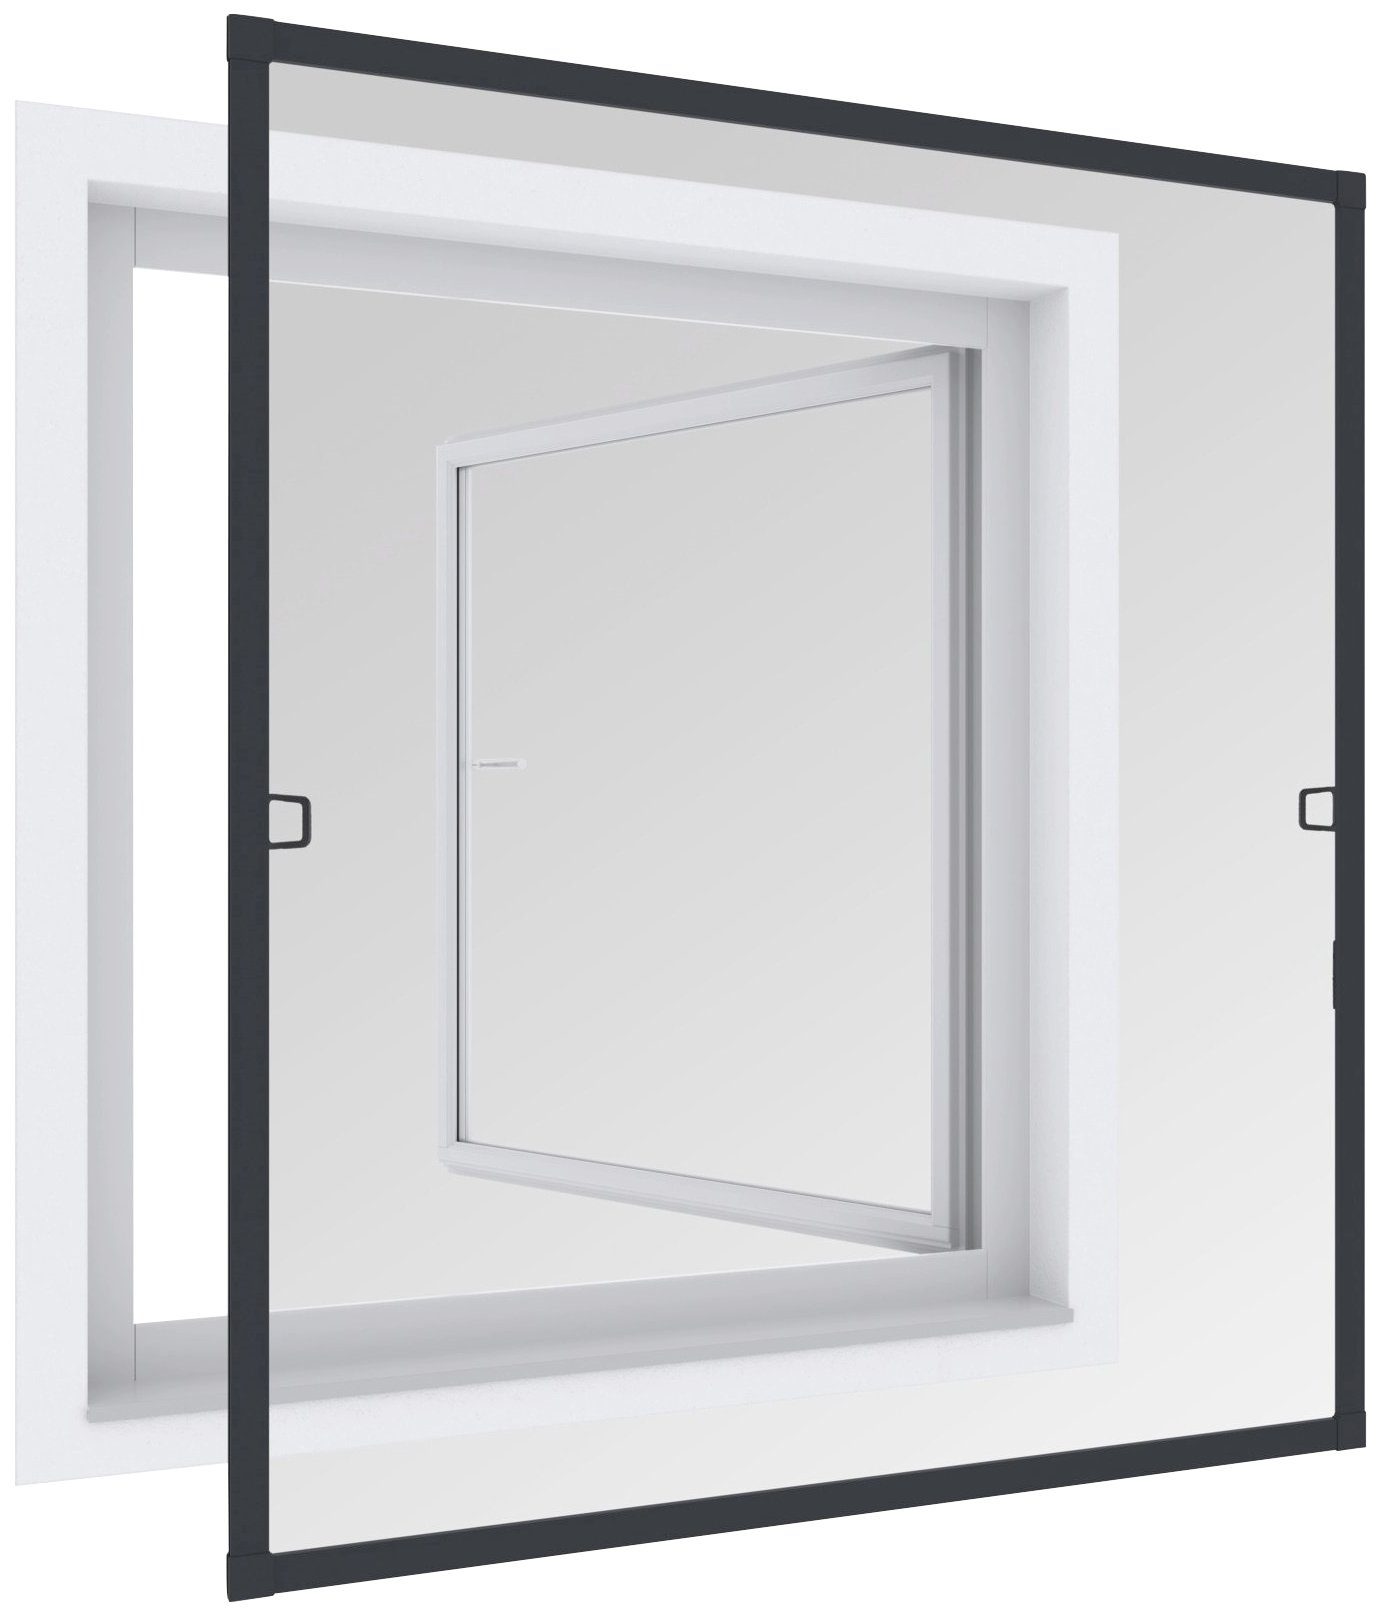 Windhager Insektenschutz-Fensterrahmen »Spannrahmen PLUS«, BxH: 100x120 cm